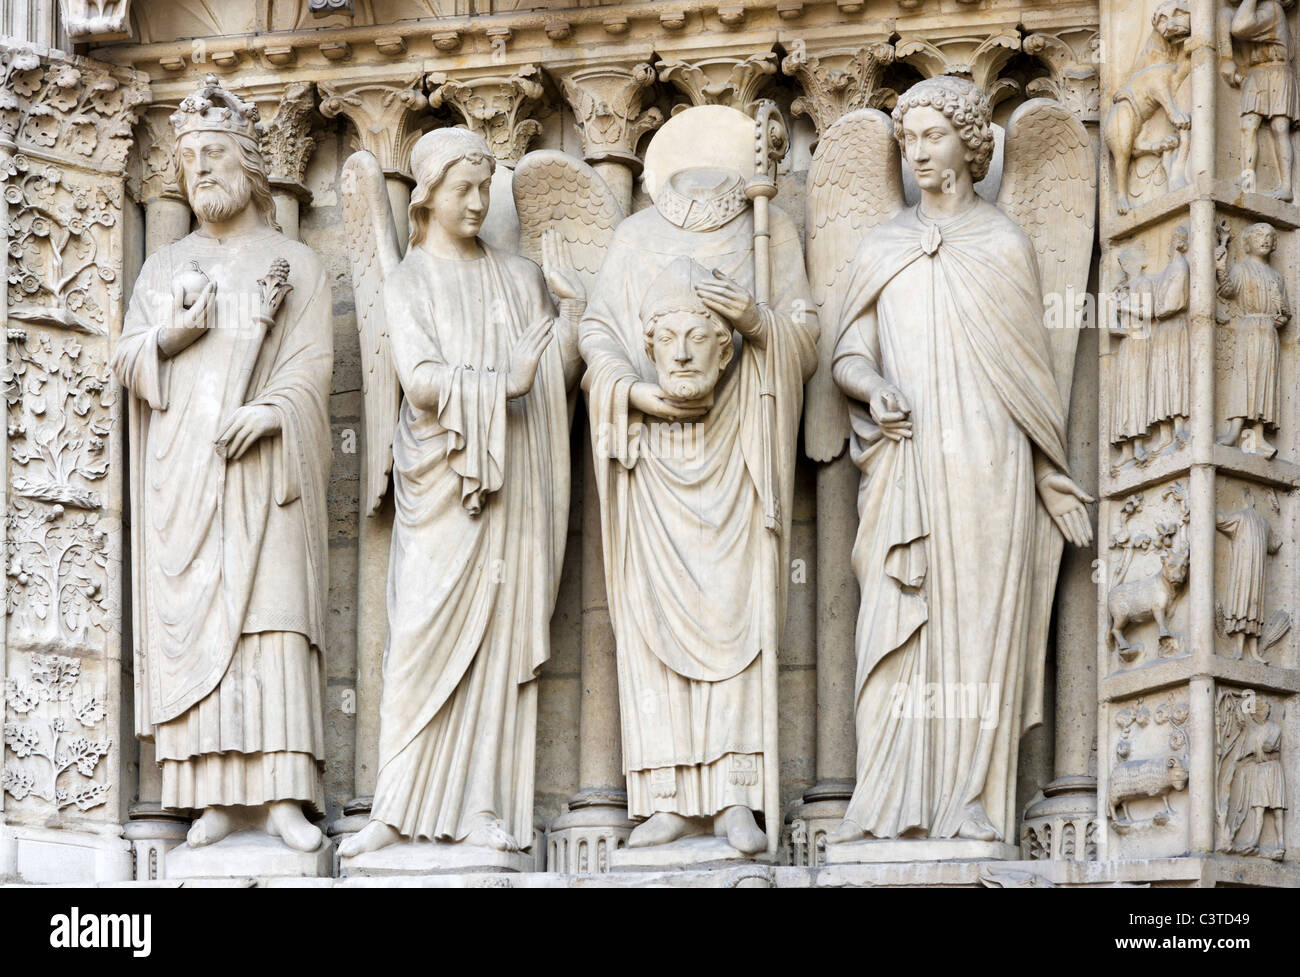 Statues outside the entrance to the Cathedral of Notre Dame de Paris, Ile de la Cite, Paris, France Stock Photo